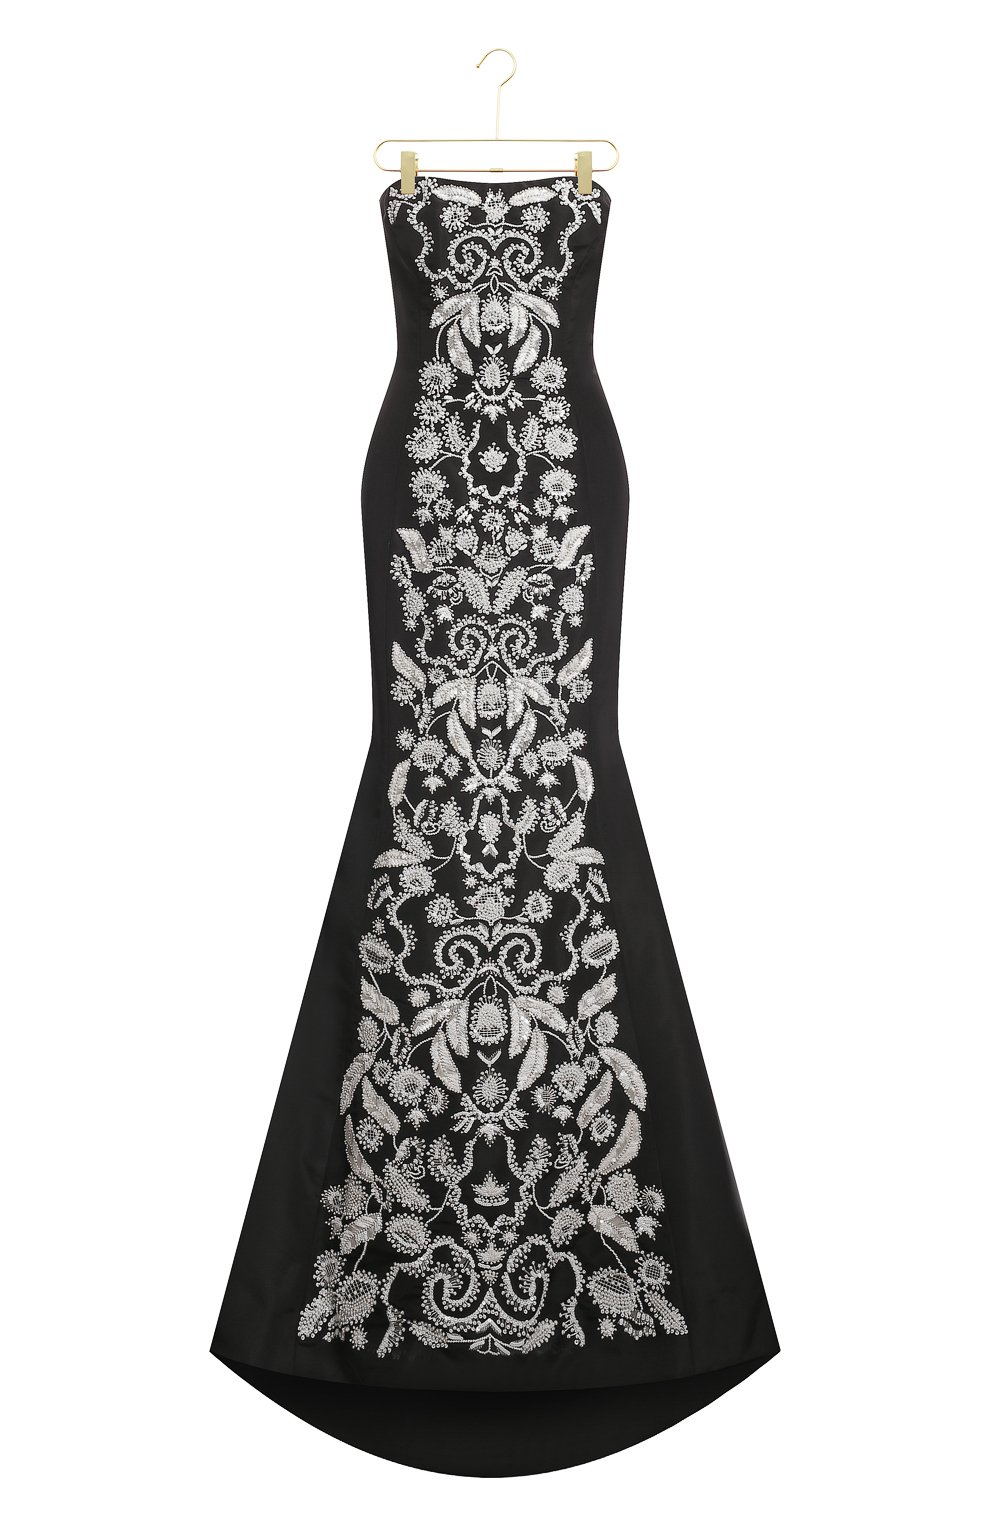 Шелковое платье | Oscar de la Renta | Чёрно-белый - 1